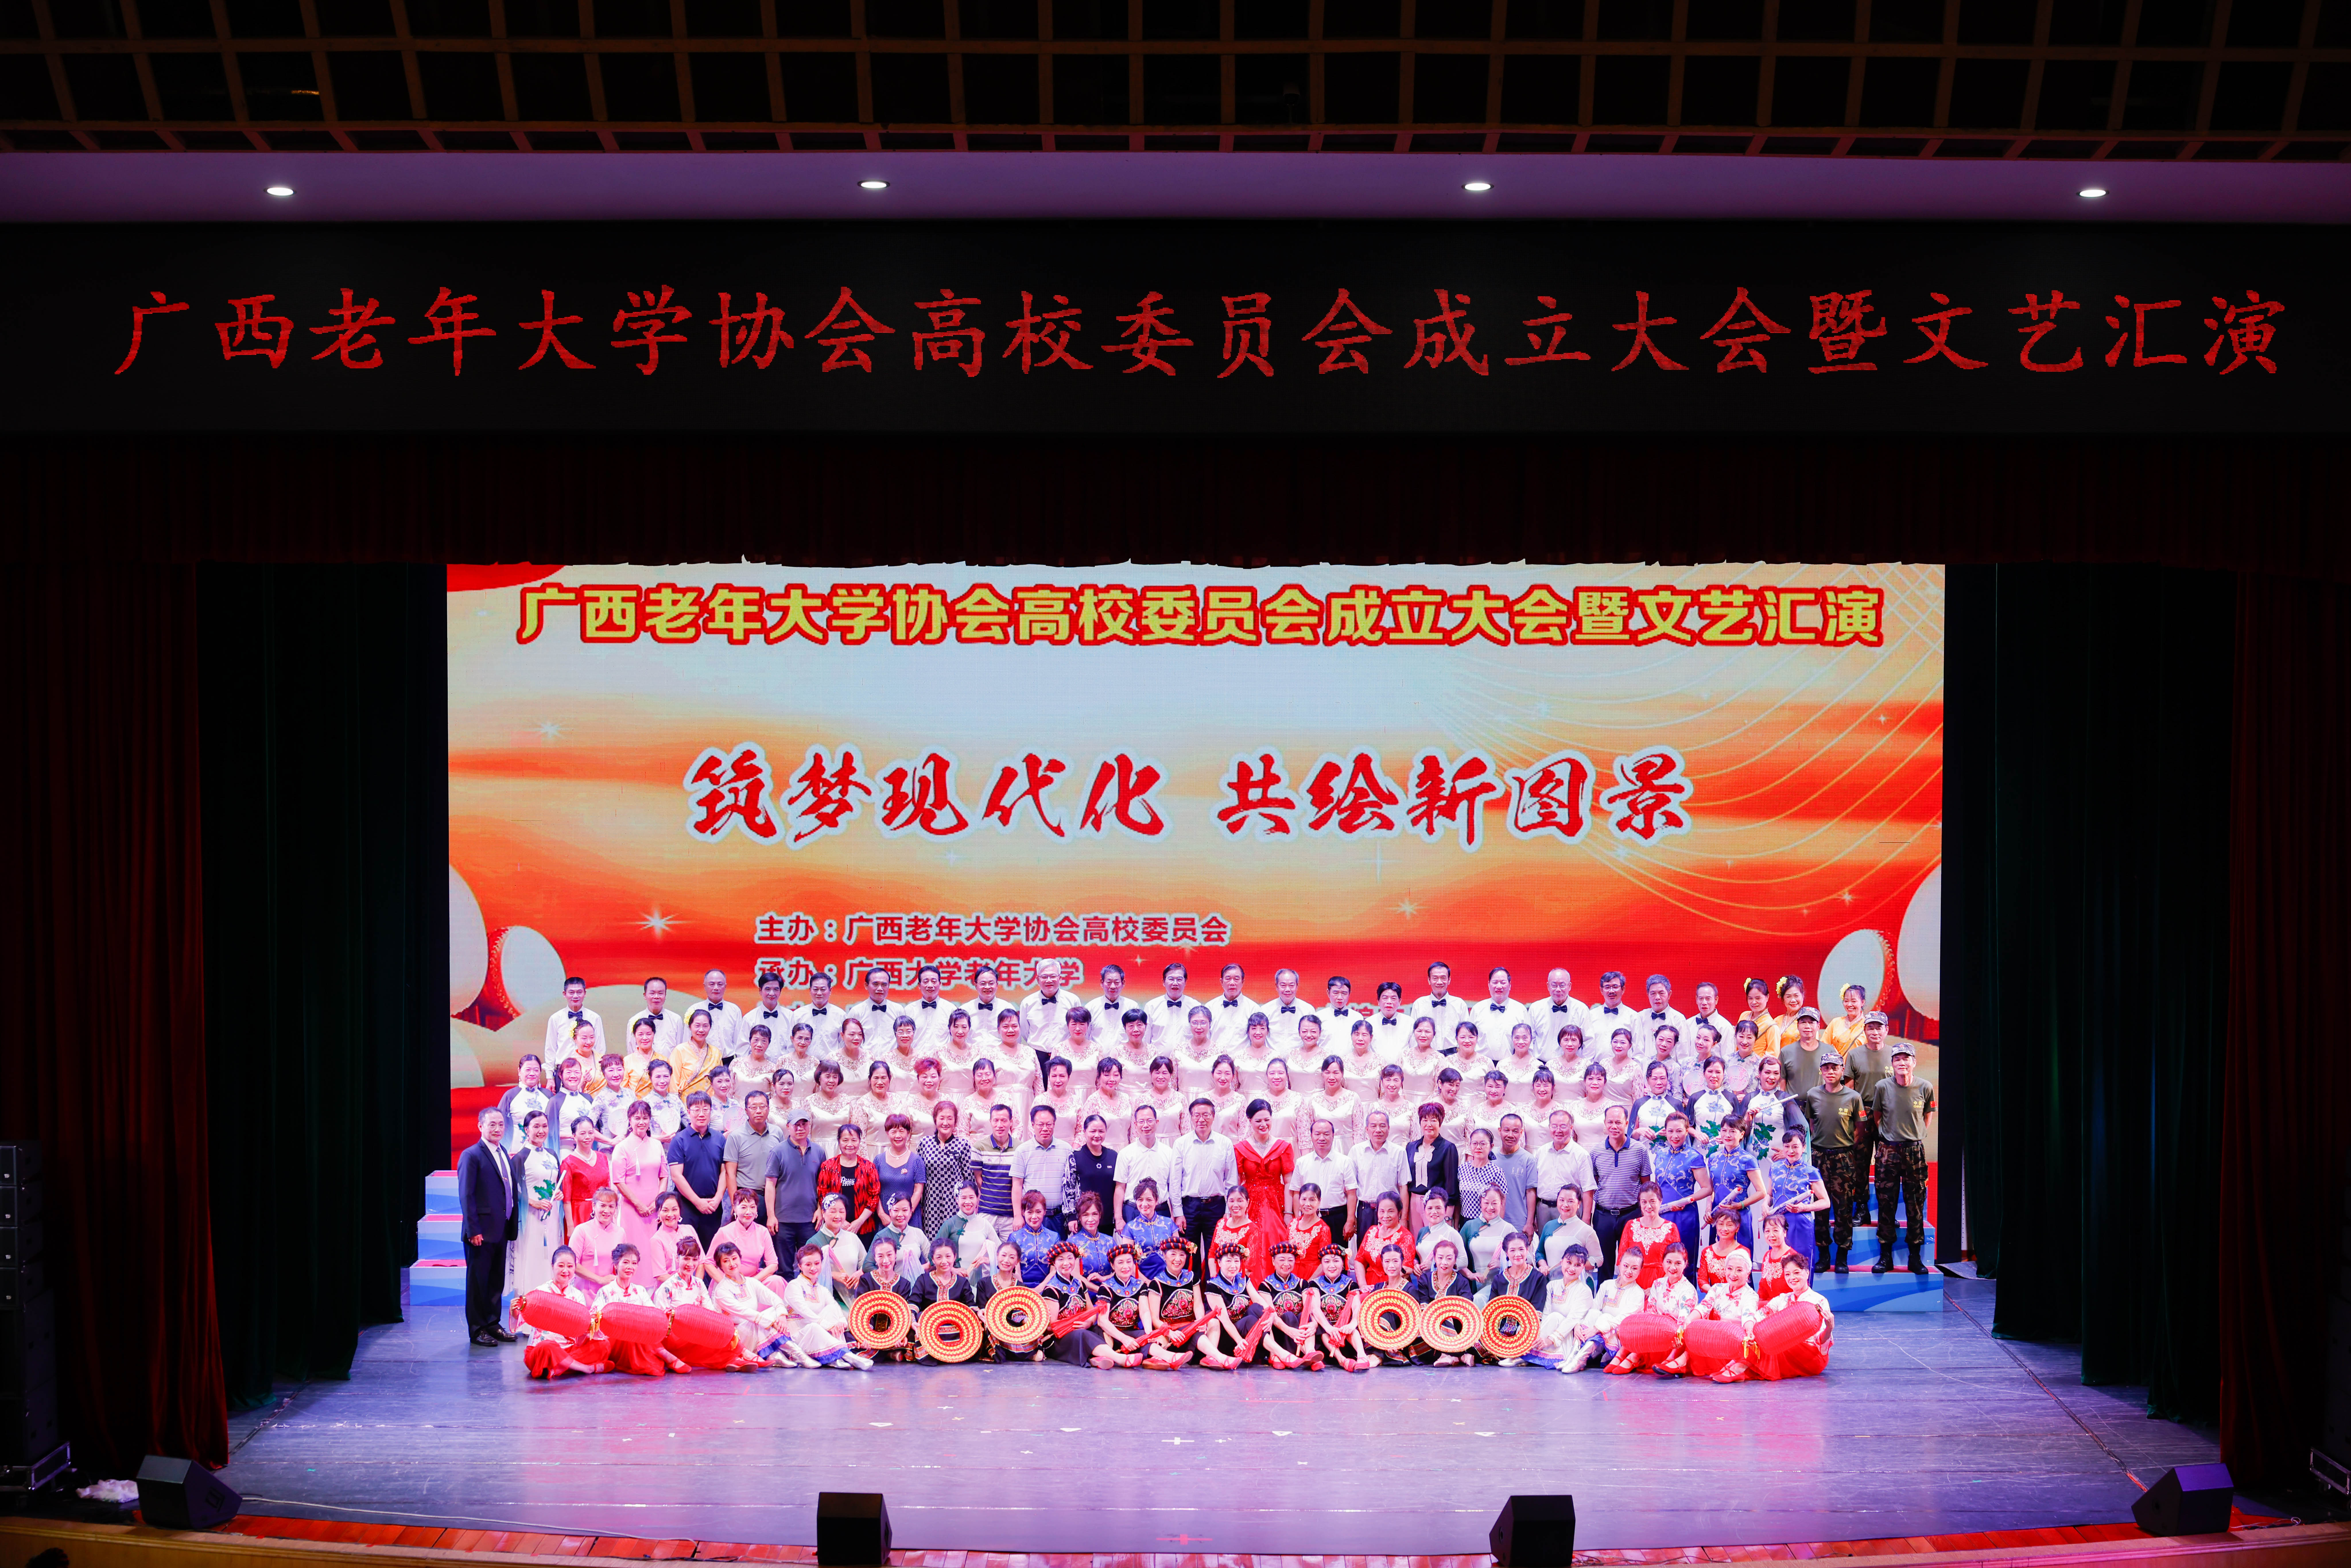 广西老年大学协会高校委员会成立大会暨文艺汇演在我校顺利举...